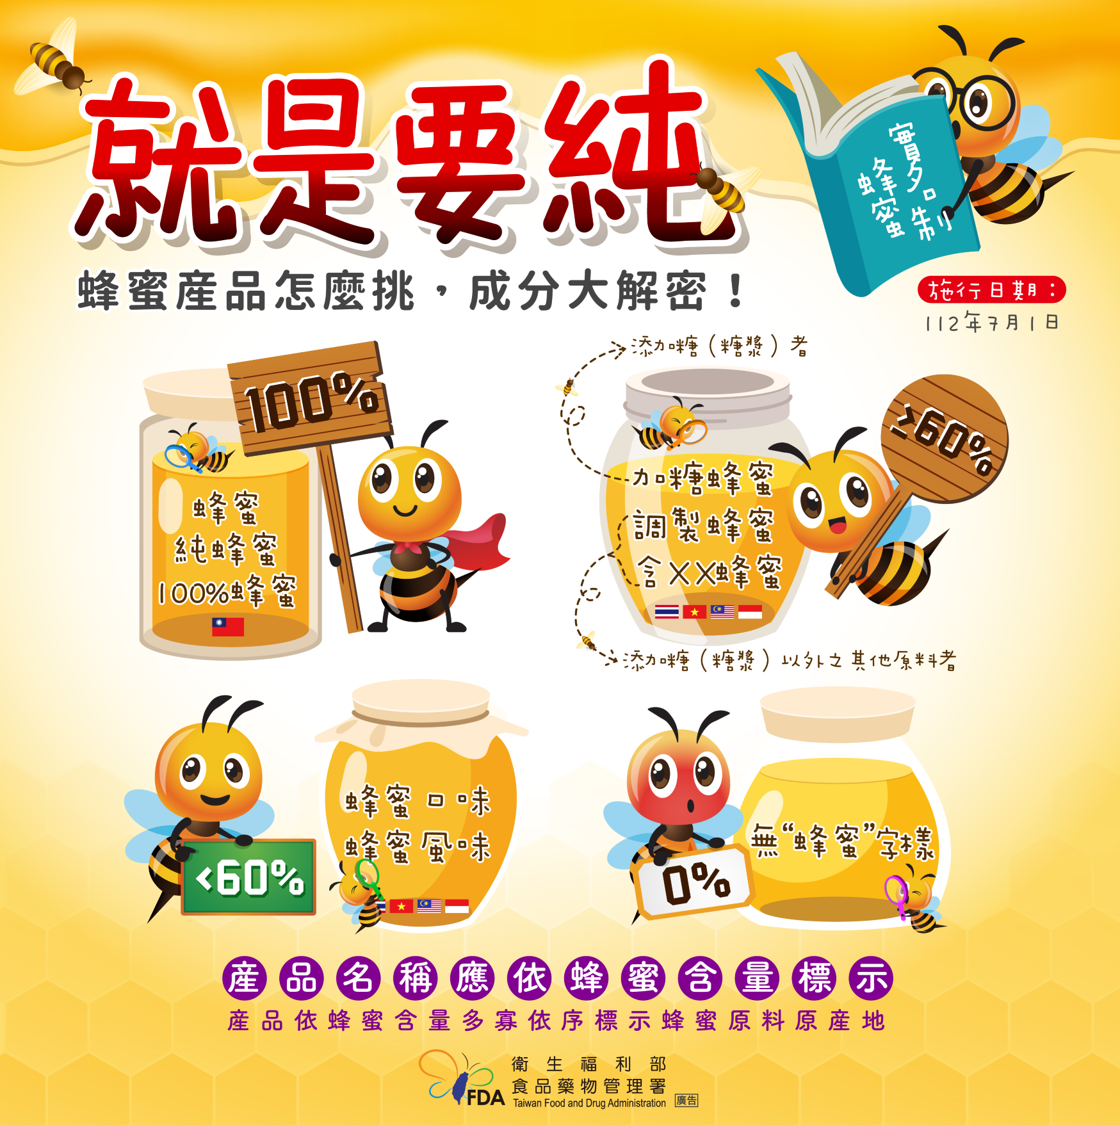 蜂蜜產品標示規定